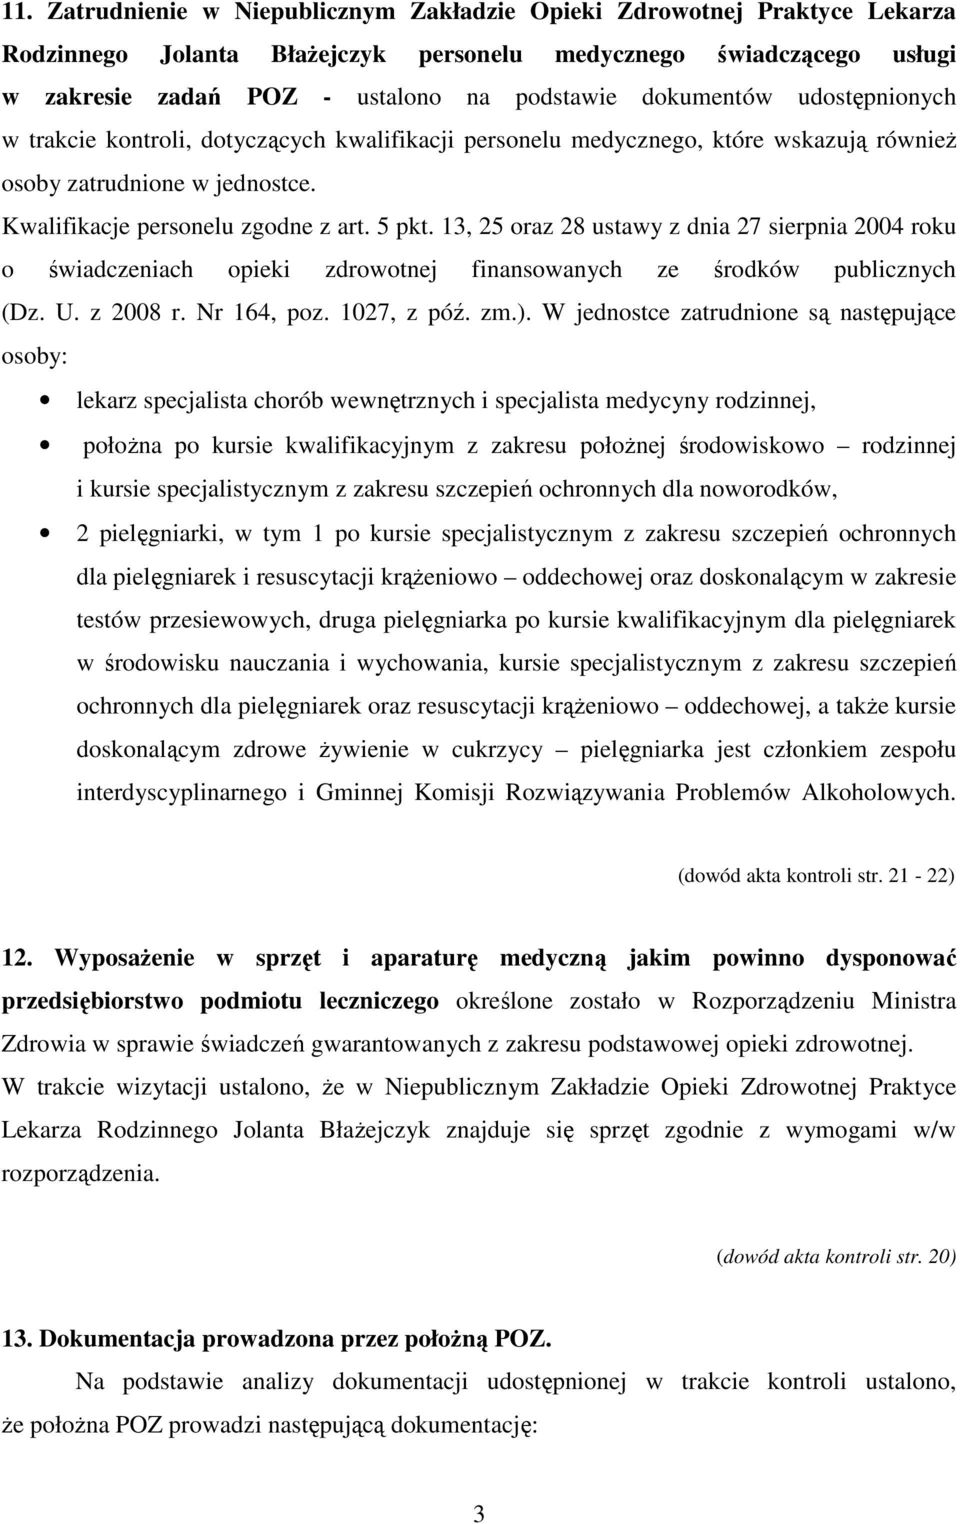 13, 25 oraz 28 ustawy z dnia 27 sierpnia 2004 roku o świadczeniach opieki zdrowotnej finansowanych ze środków publicznych (Dz. U. z 2008 r. Nr 164, poz. 1027, z póź. zm.).